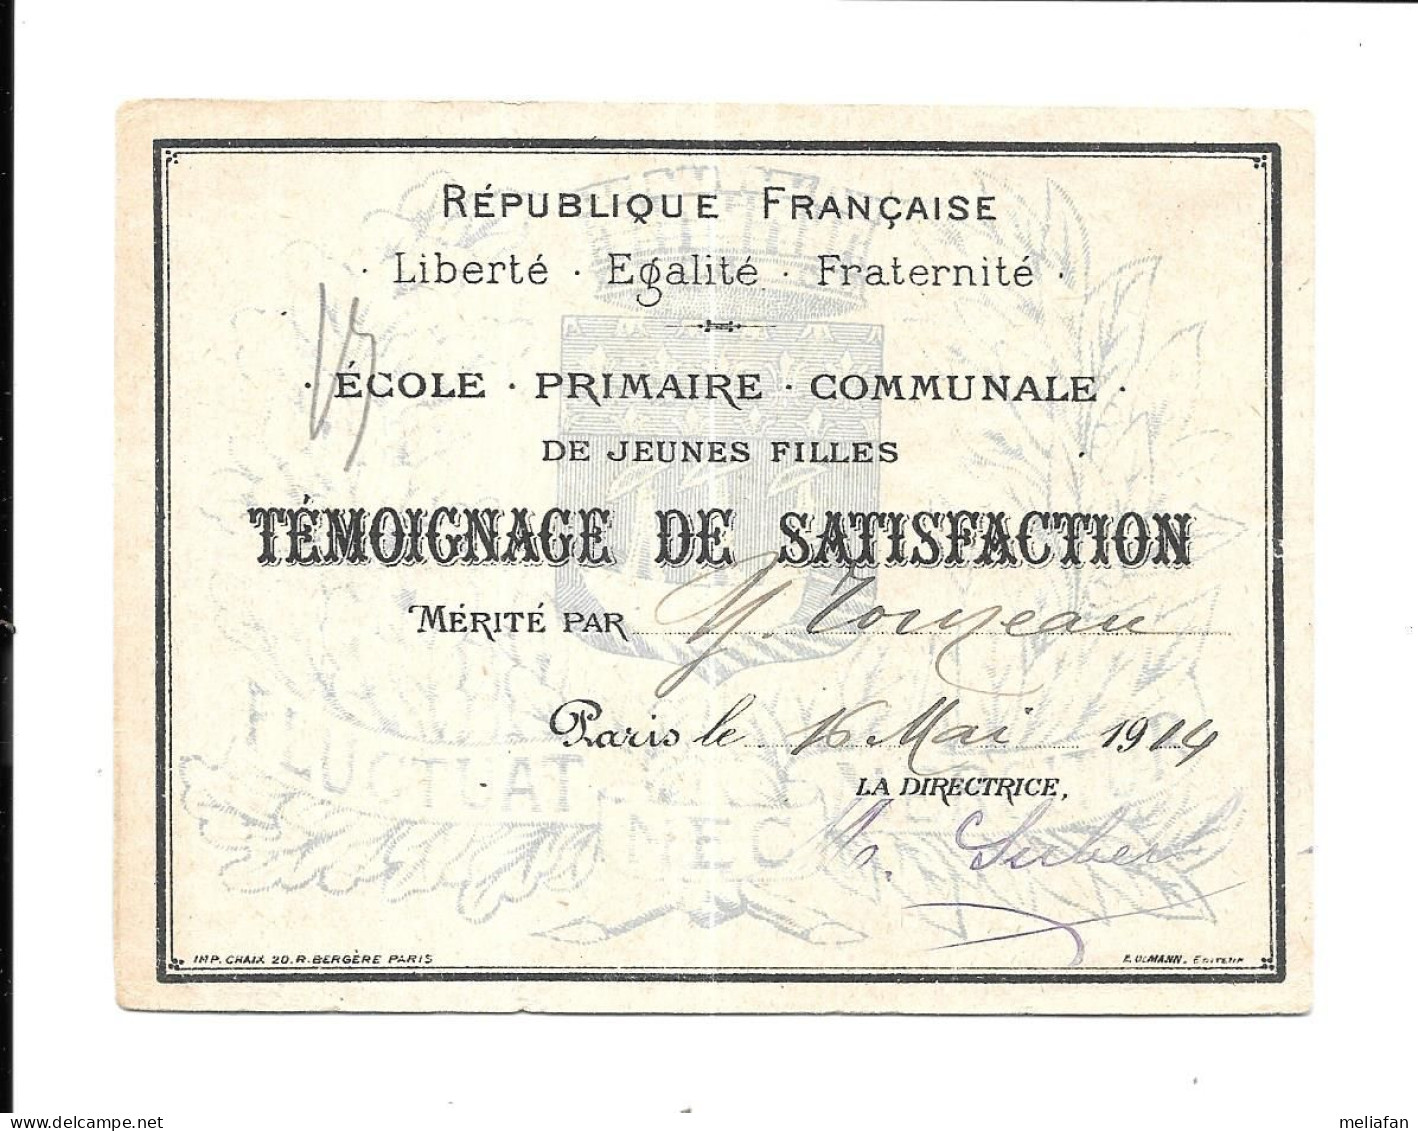 KB2106 - TEMOIGNAGE DE SATISFACTION - ECOLE PRIMAIRE COMMUNALE VILLE DE PARIS 1914 - TOINEAU - Diploma & School Reports